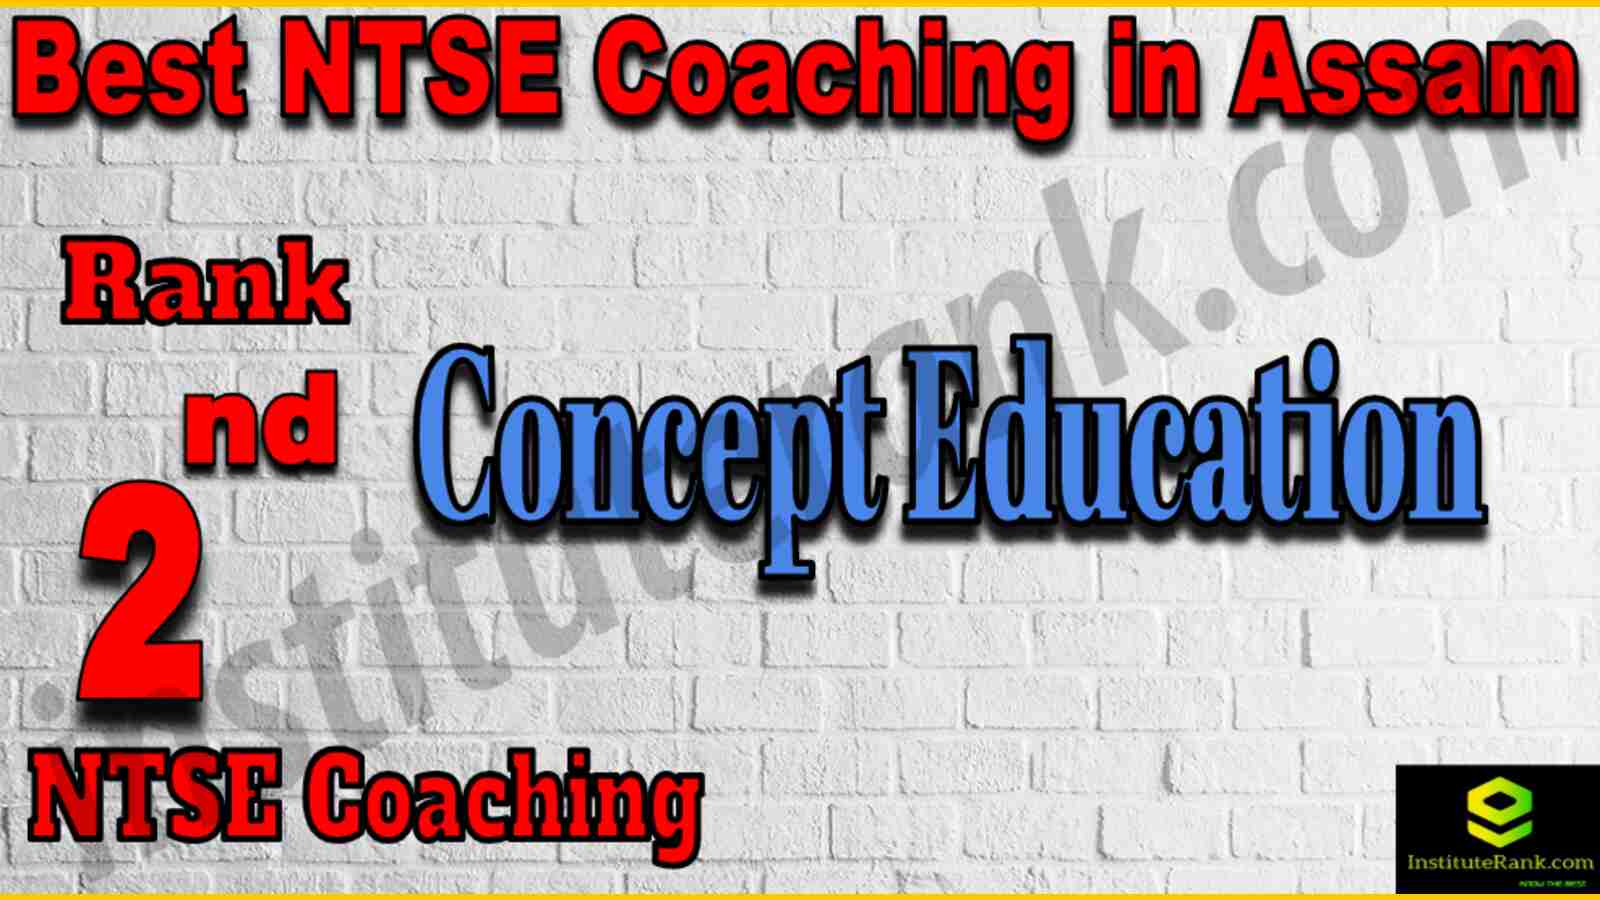 2nd Best NTSE Coaching in Assam